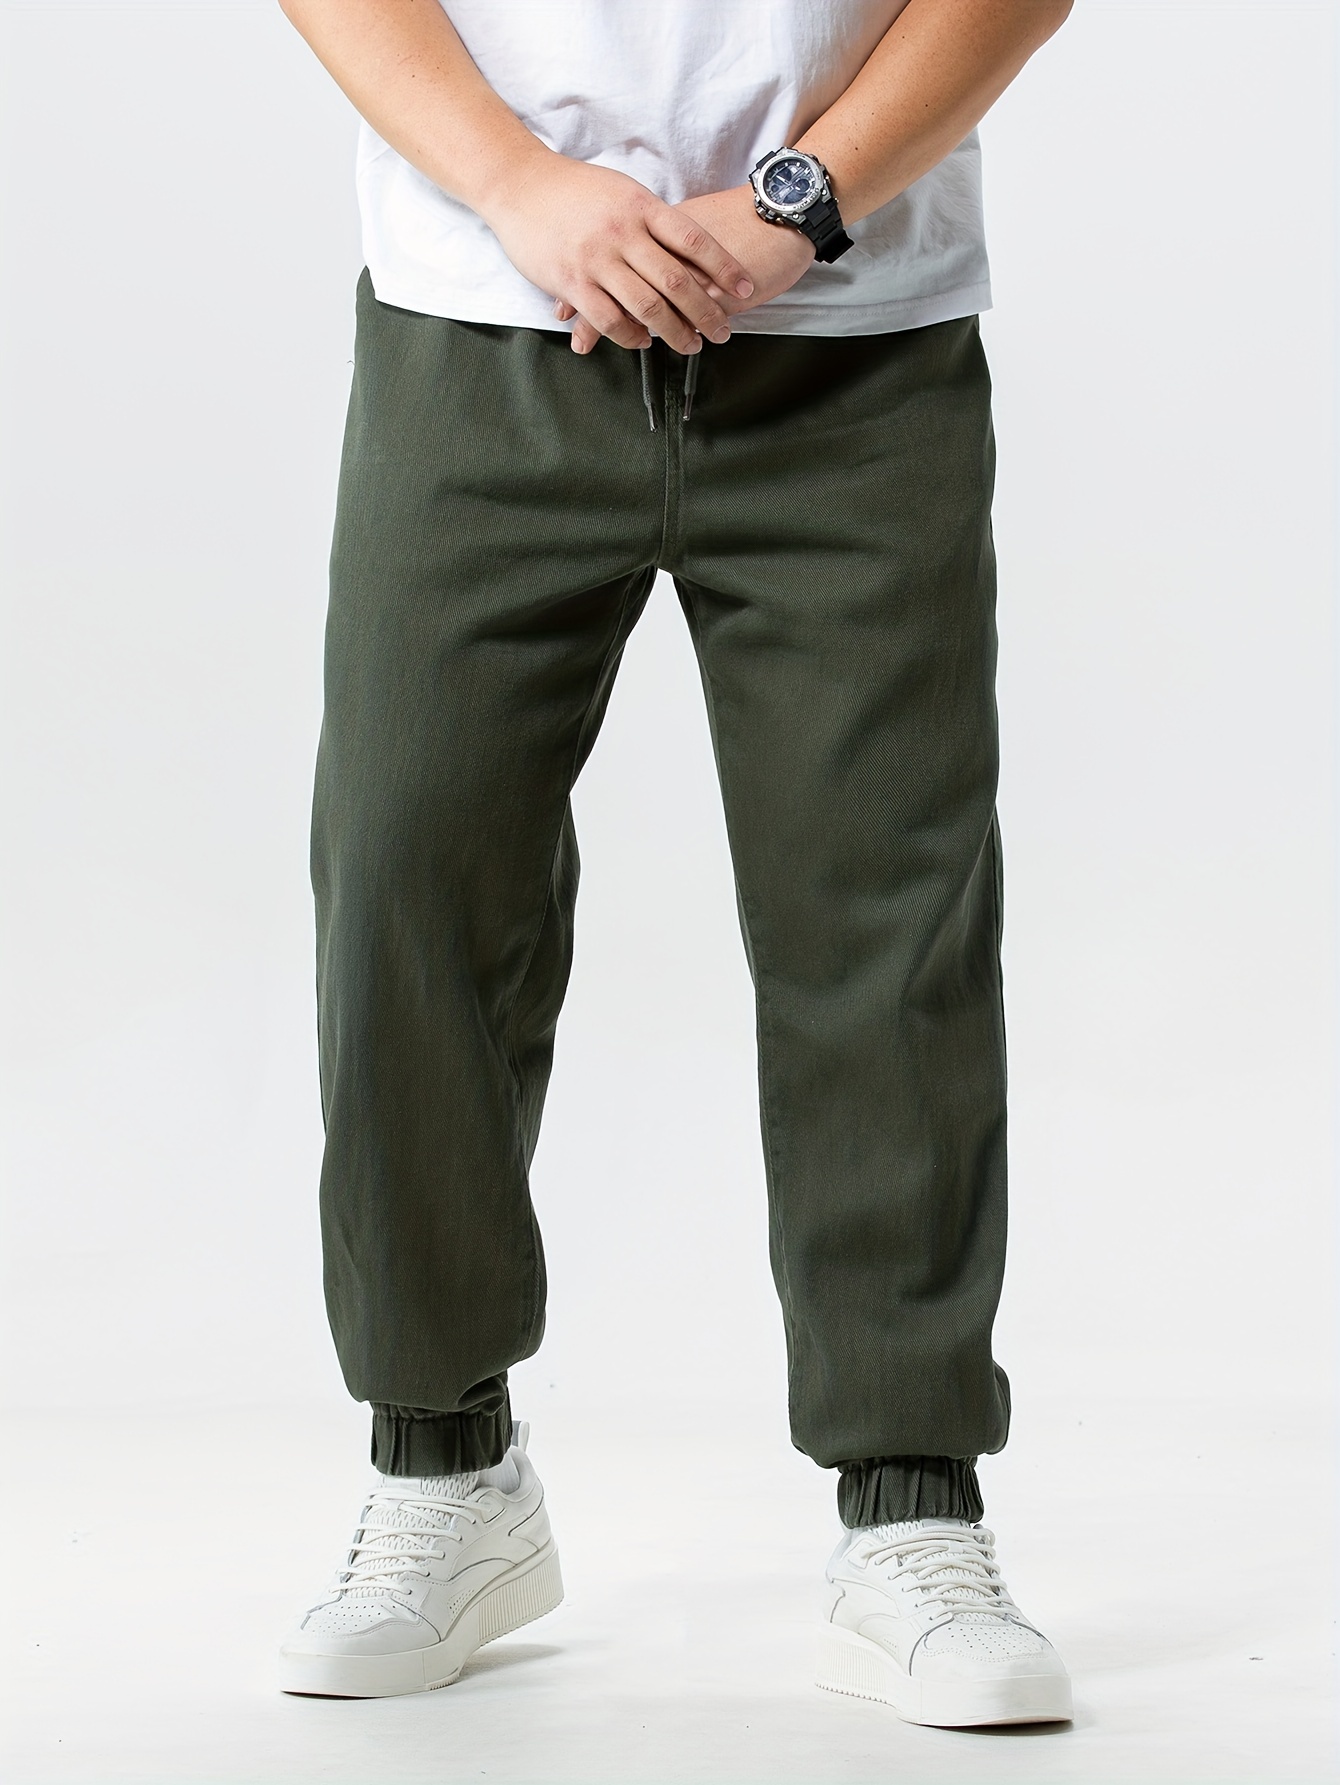 Plus Size Men's Solid Joggers Cotton Oversized Pants For Autumn/winter,  Men's Clothing